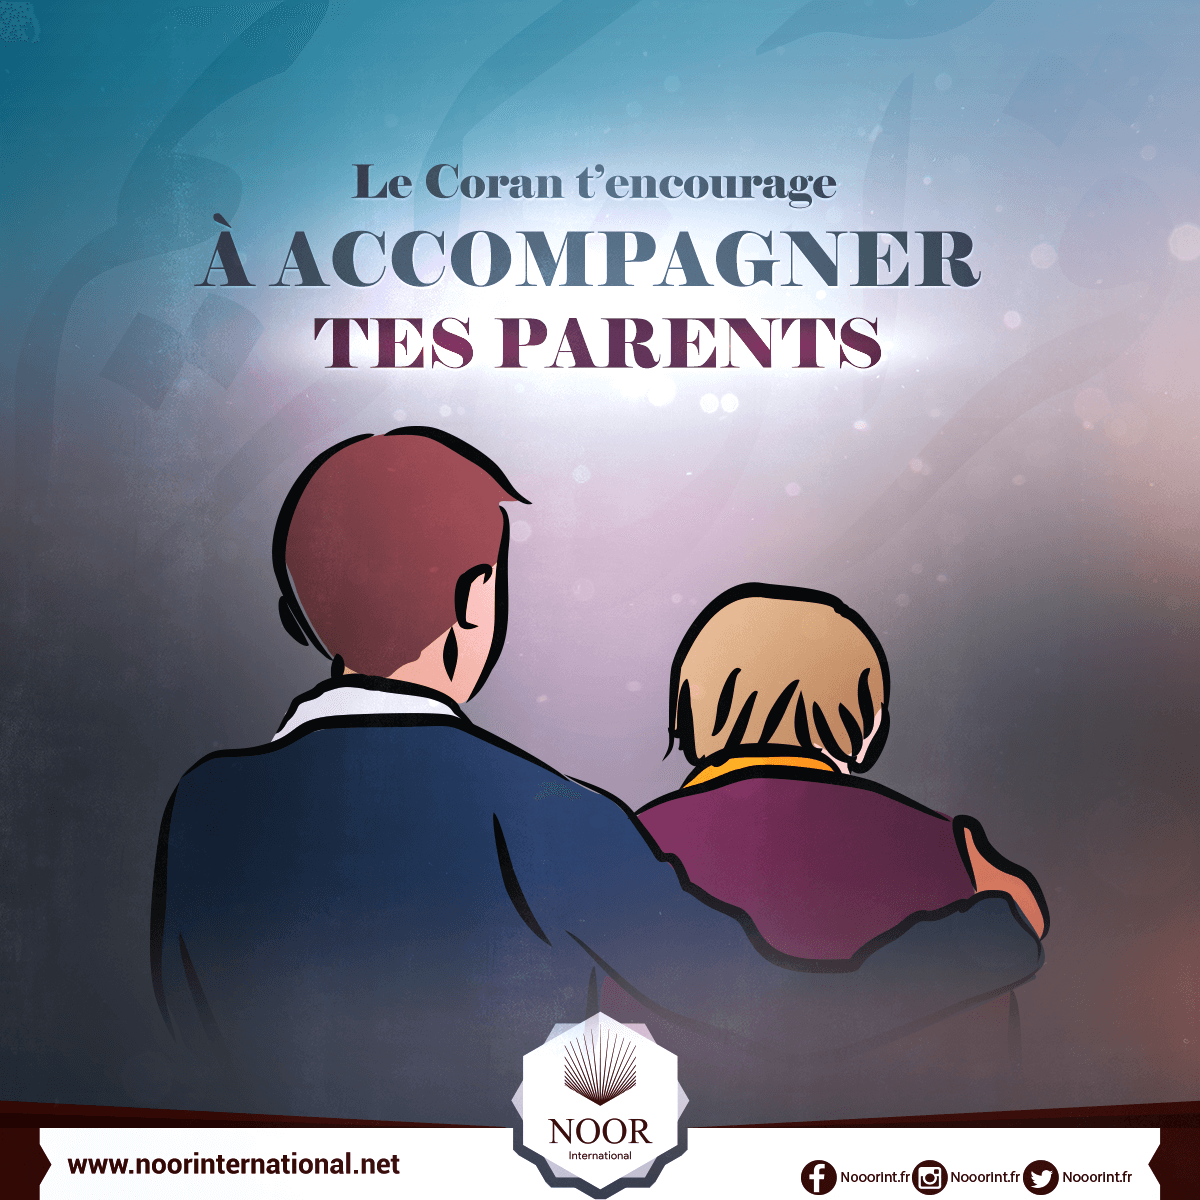 Le Coran t’encourage à accompagner tes parents